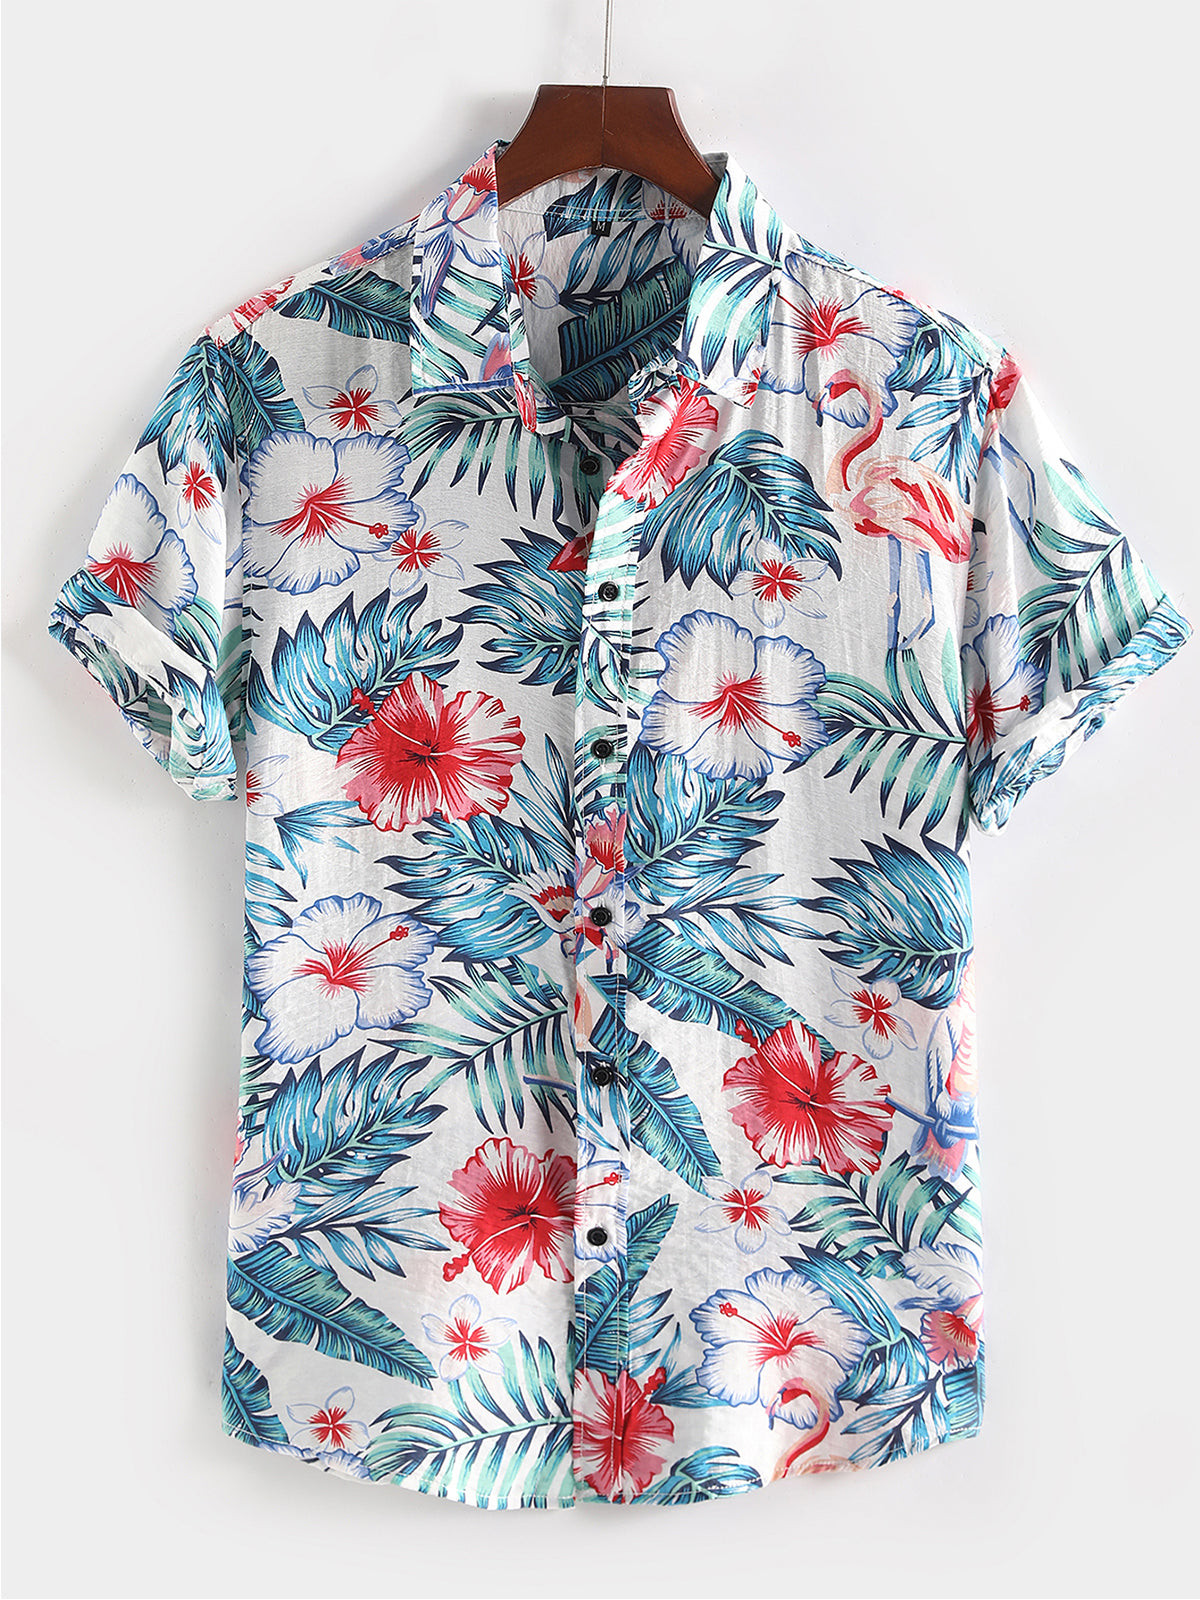 Mens Floral Printed Holiday Cotton Shirt Hawaiian Shirt for Men Women